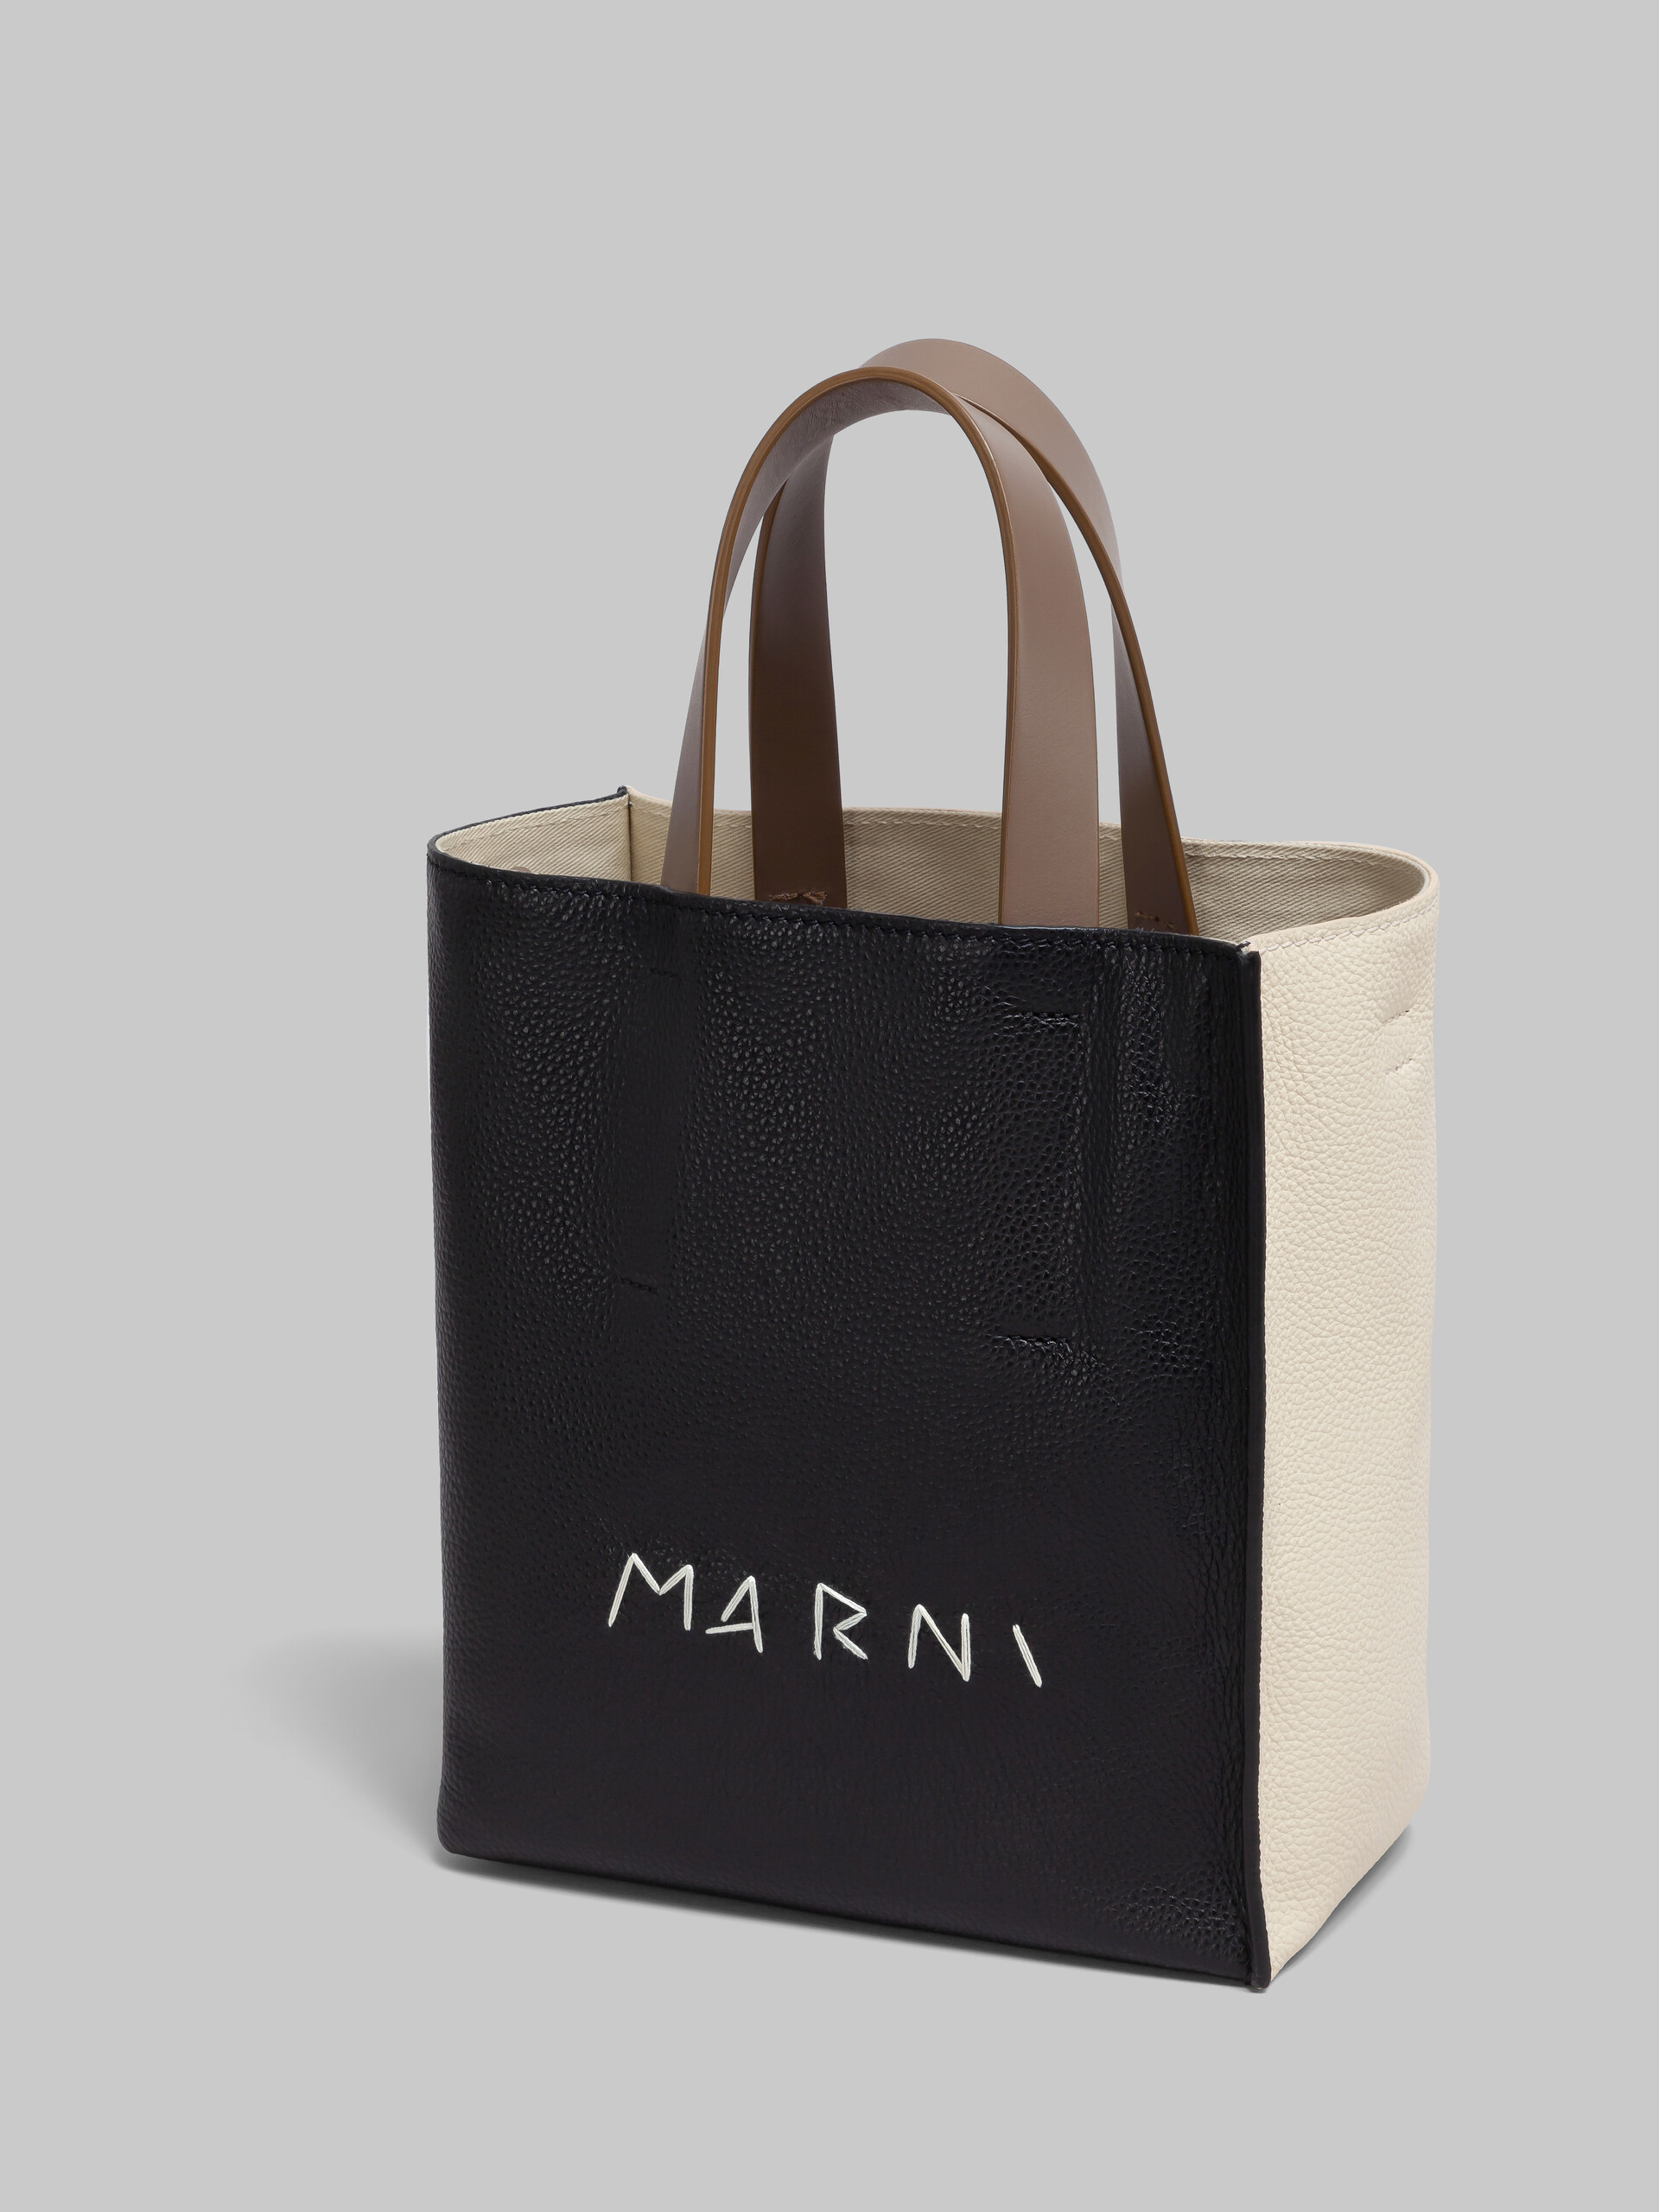 Museo Soft bag Mini in pelle bianca e marrone con impunture Marni - Borse shopping - Image 5